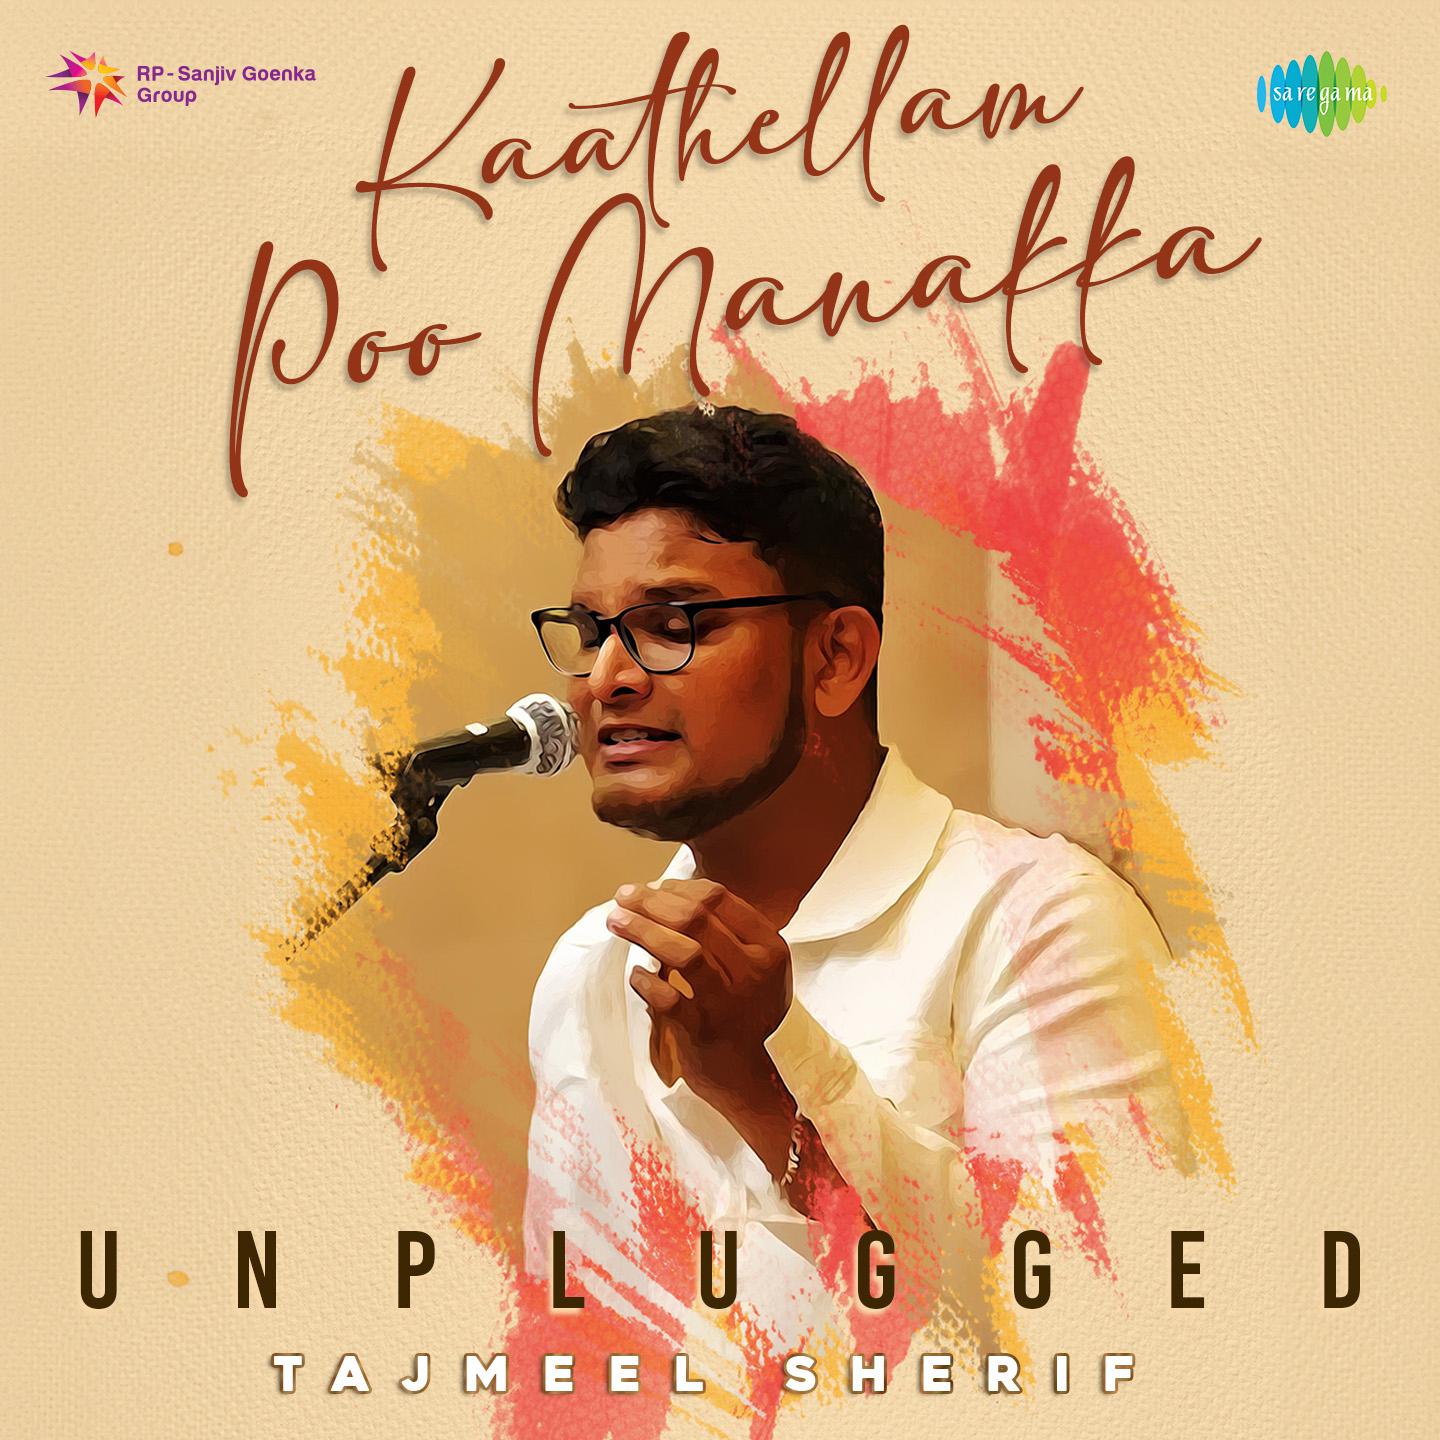 Tajmeel Sherif - Kaathellam Poo Manakka - Unplugged